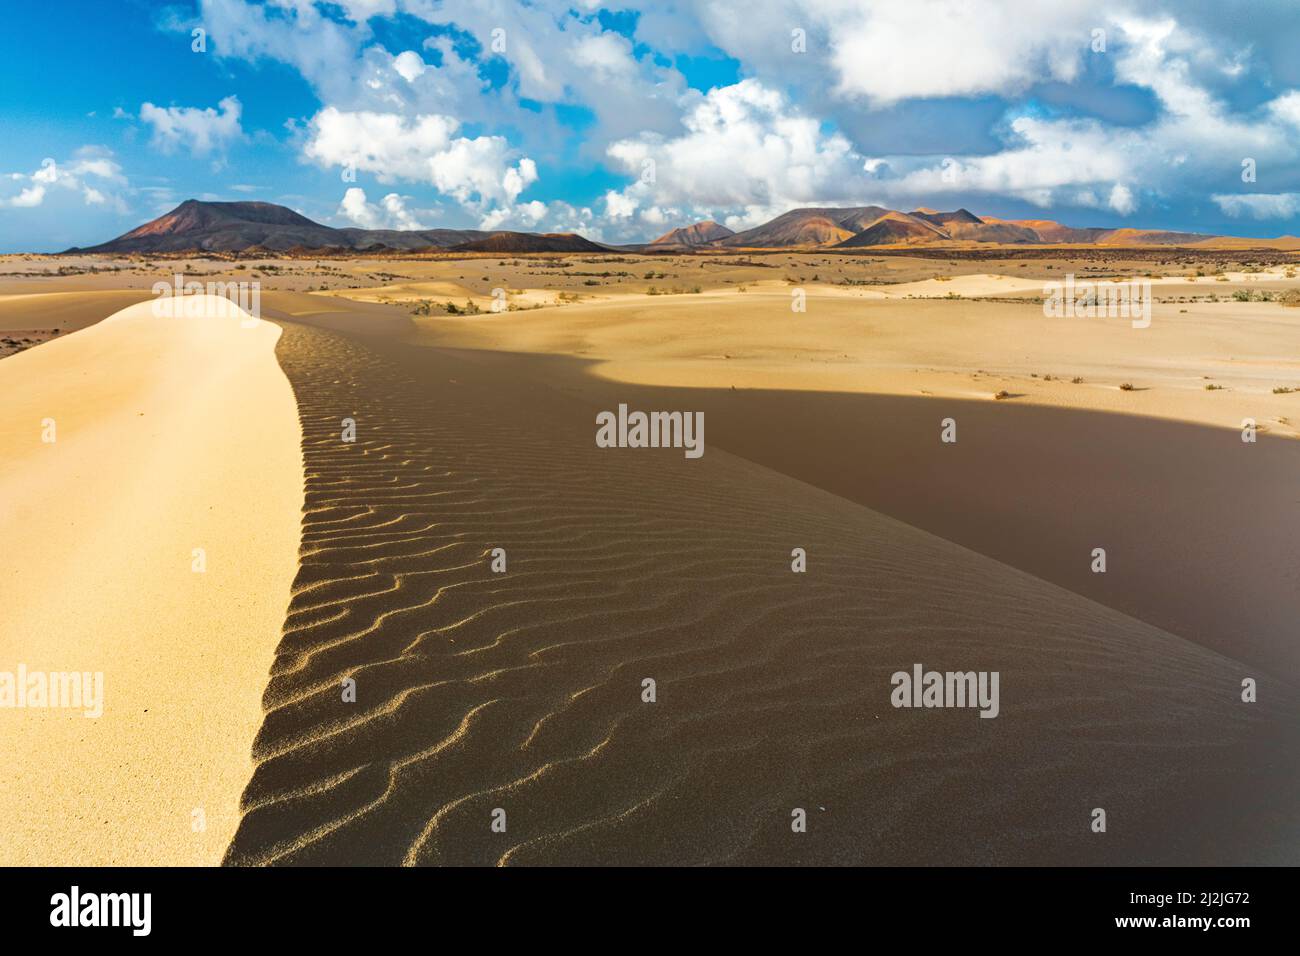 Arena ondulada de dunas del desierto en forma de viento, Parque Natural de Corralejo, Fuerteventura, Islas Canarias, España Foto de stock